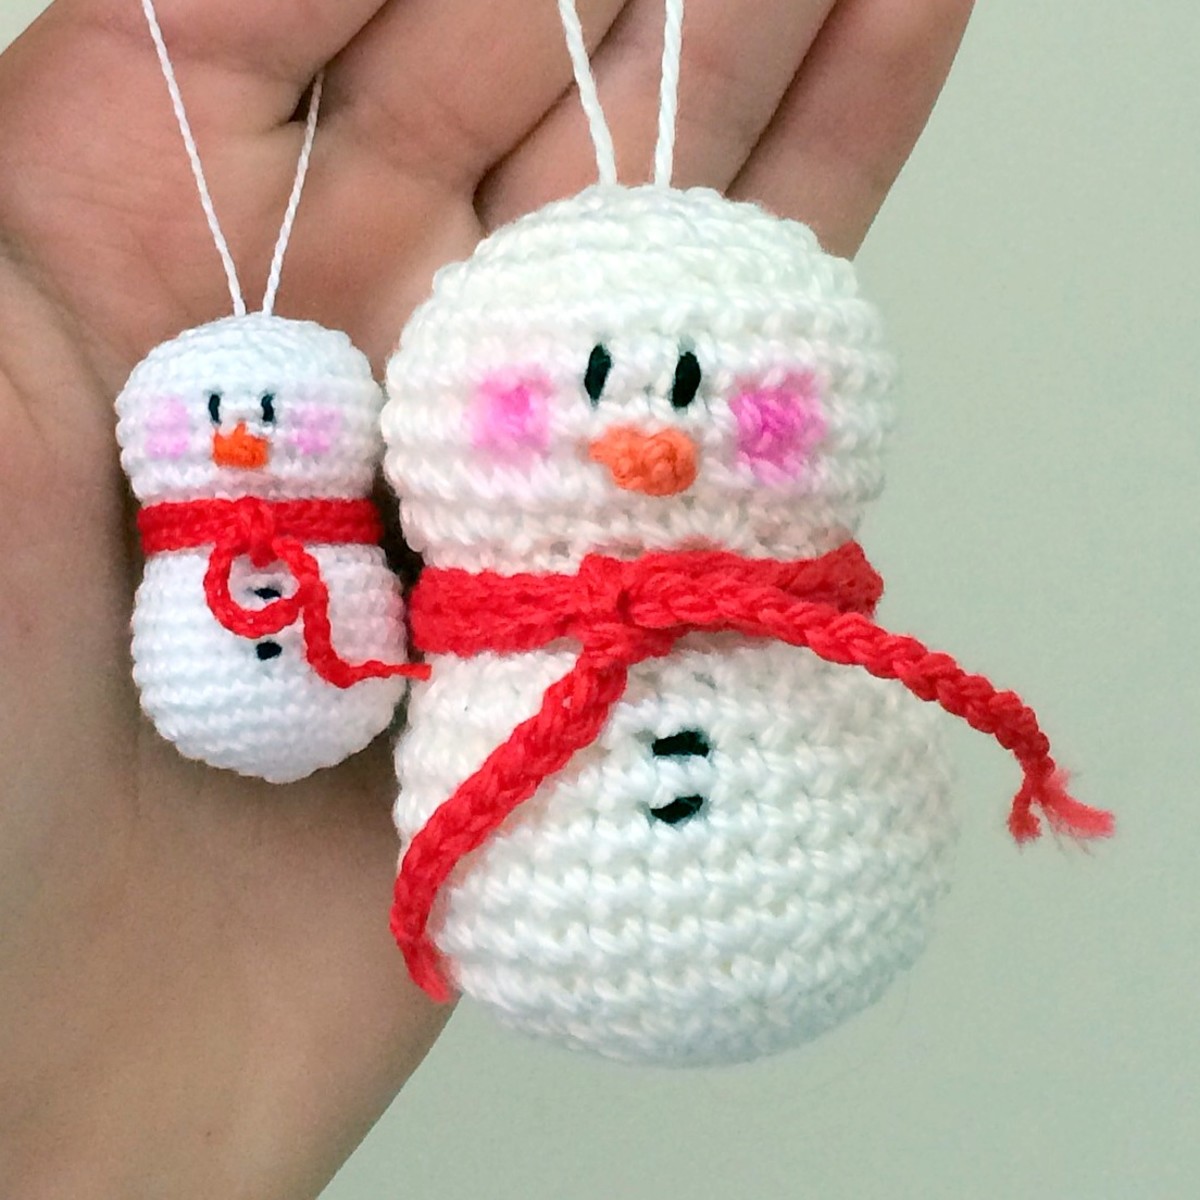 Free crochet pattern amigurumi snowman ornament.